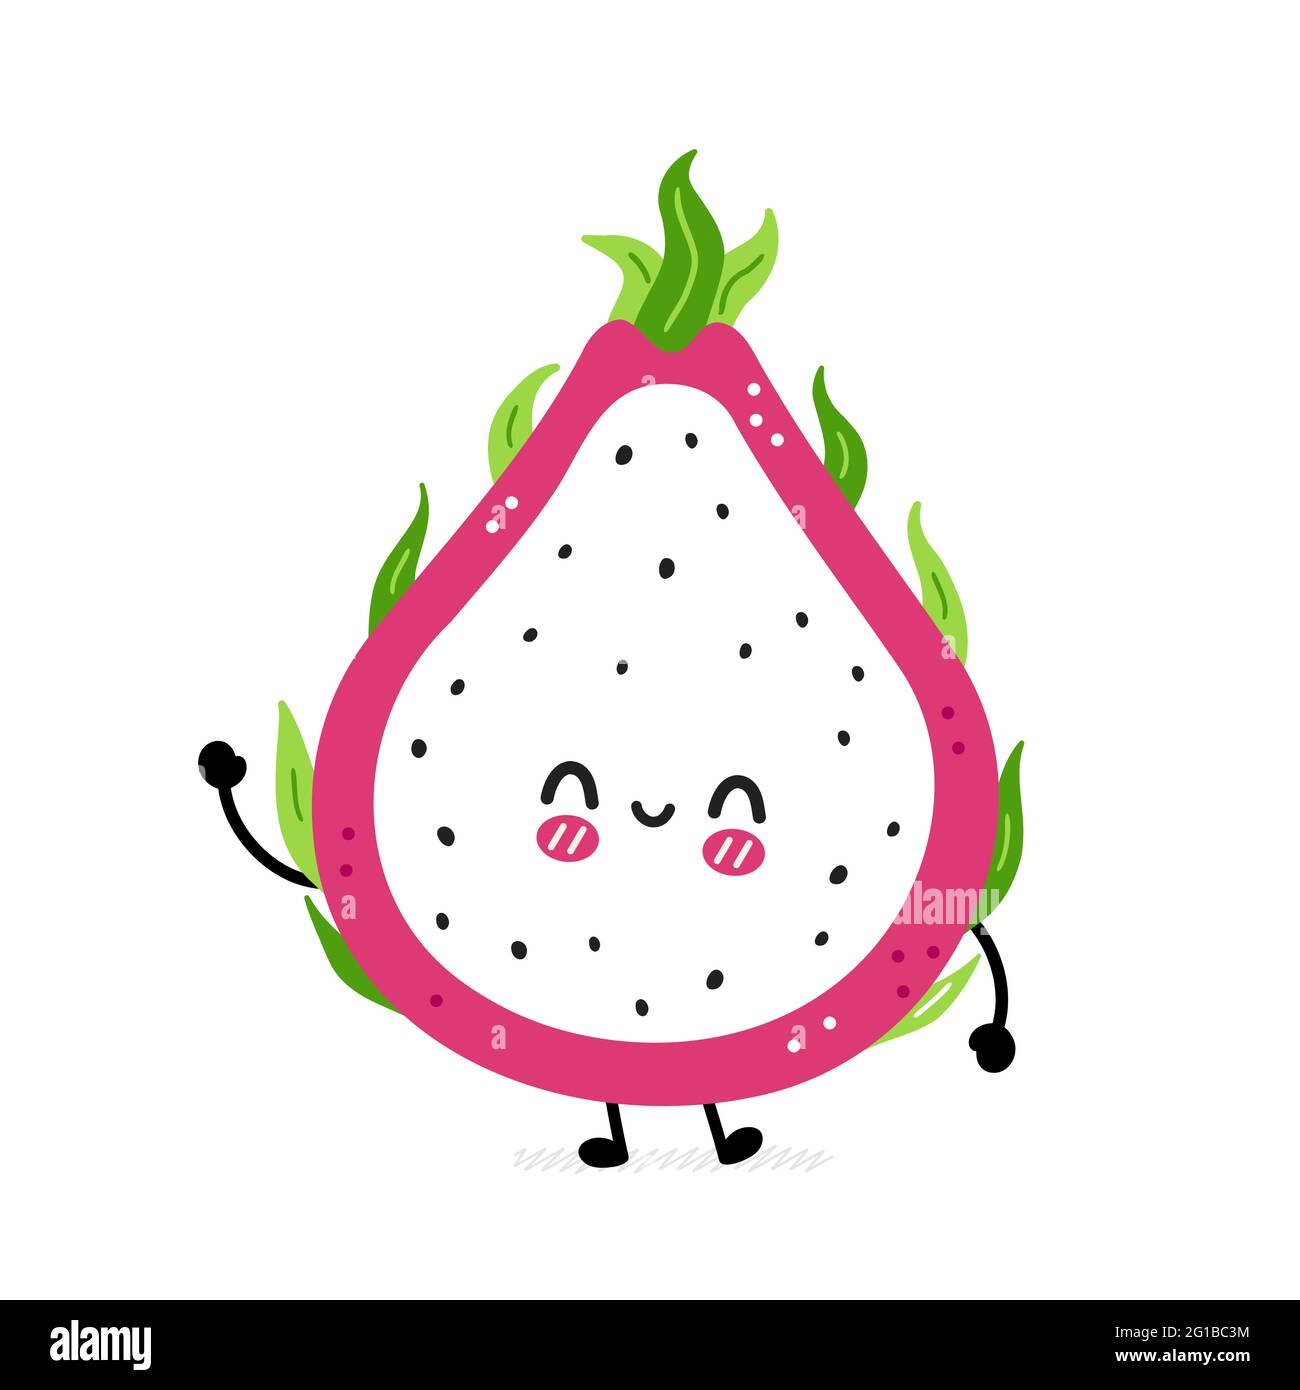 Nette lustige Drachenfrucht. Vektor Hand gezeichnet Cartoon kawaii Charakter Illustration Symbol. Isoliert auf weißem Hintergrund. Drachenfrucht, exotisches Food-Charakter-Konzept Stock Vektor